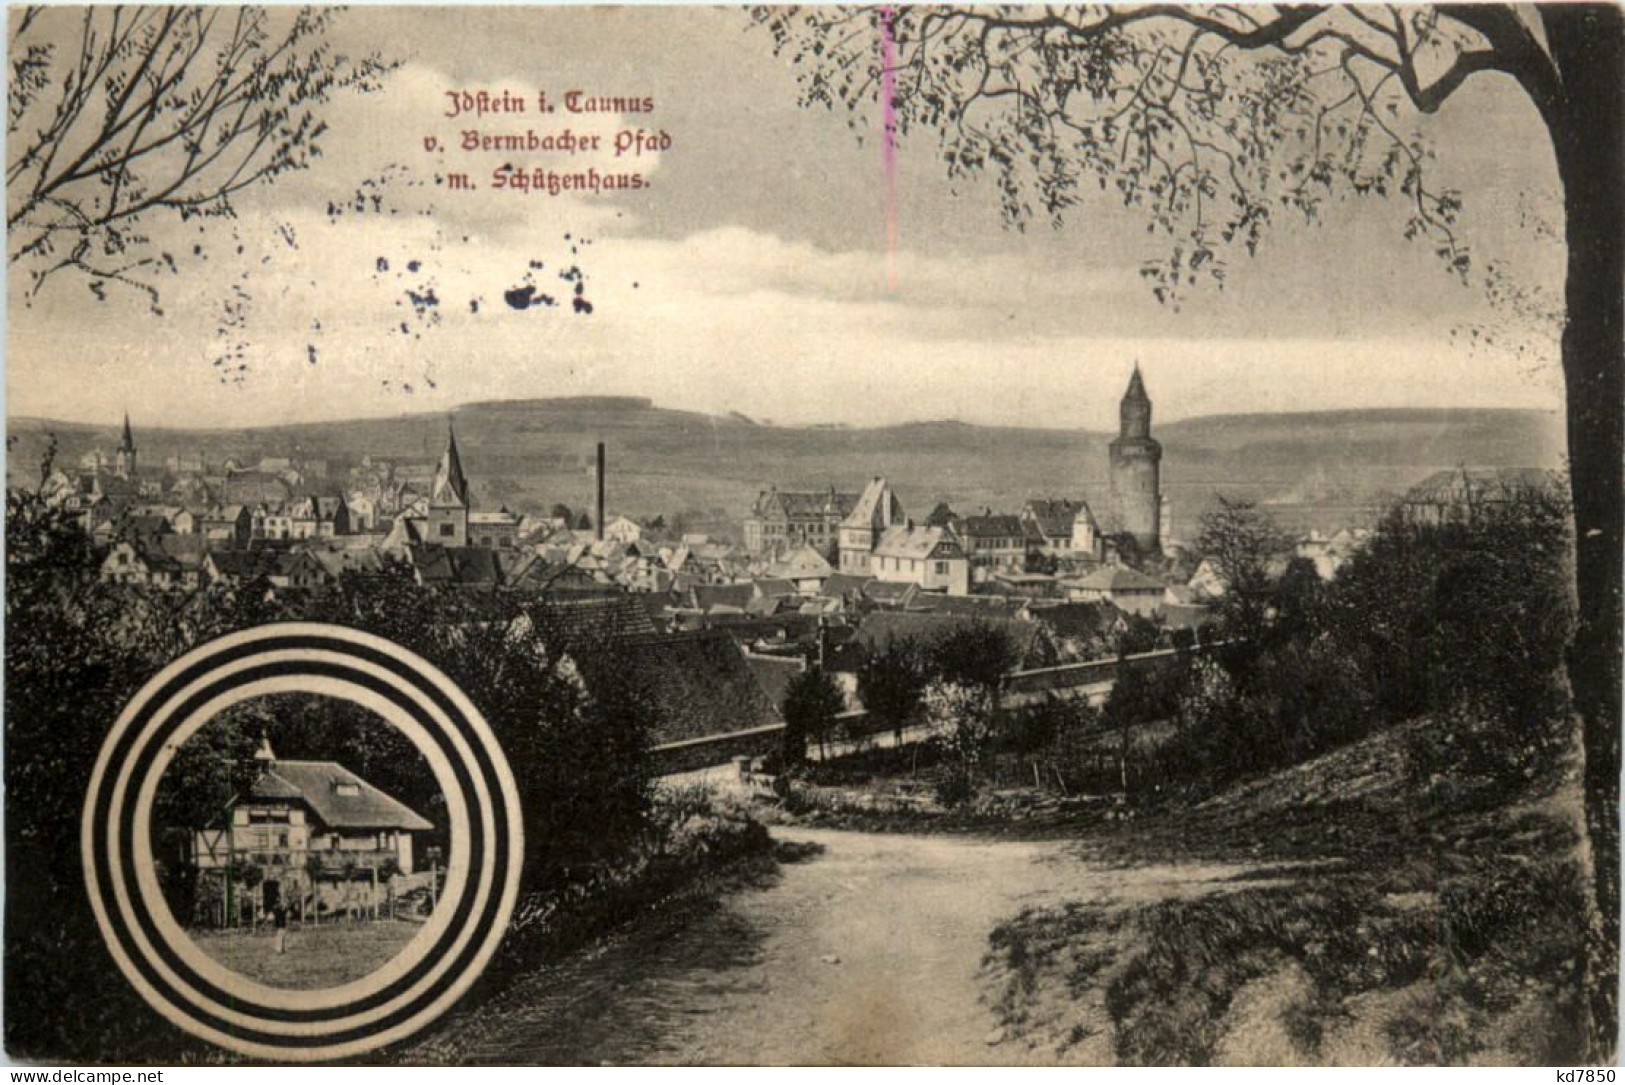 Idstein, V. Bermbacher Pfad M. Schützenhaus - Idstein